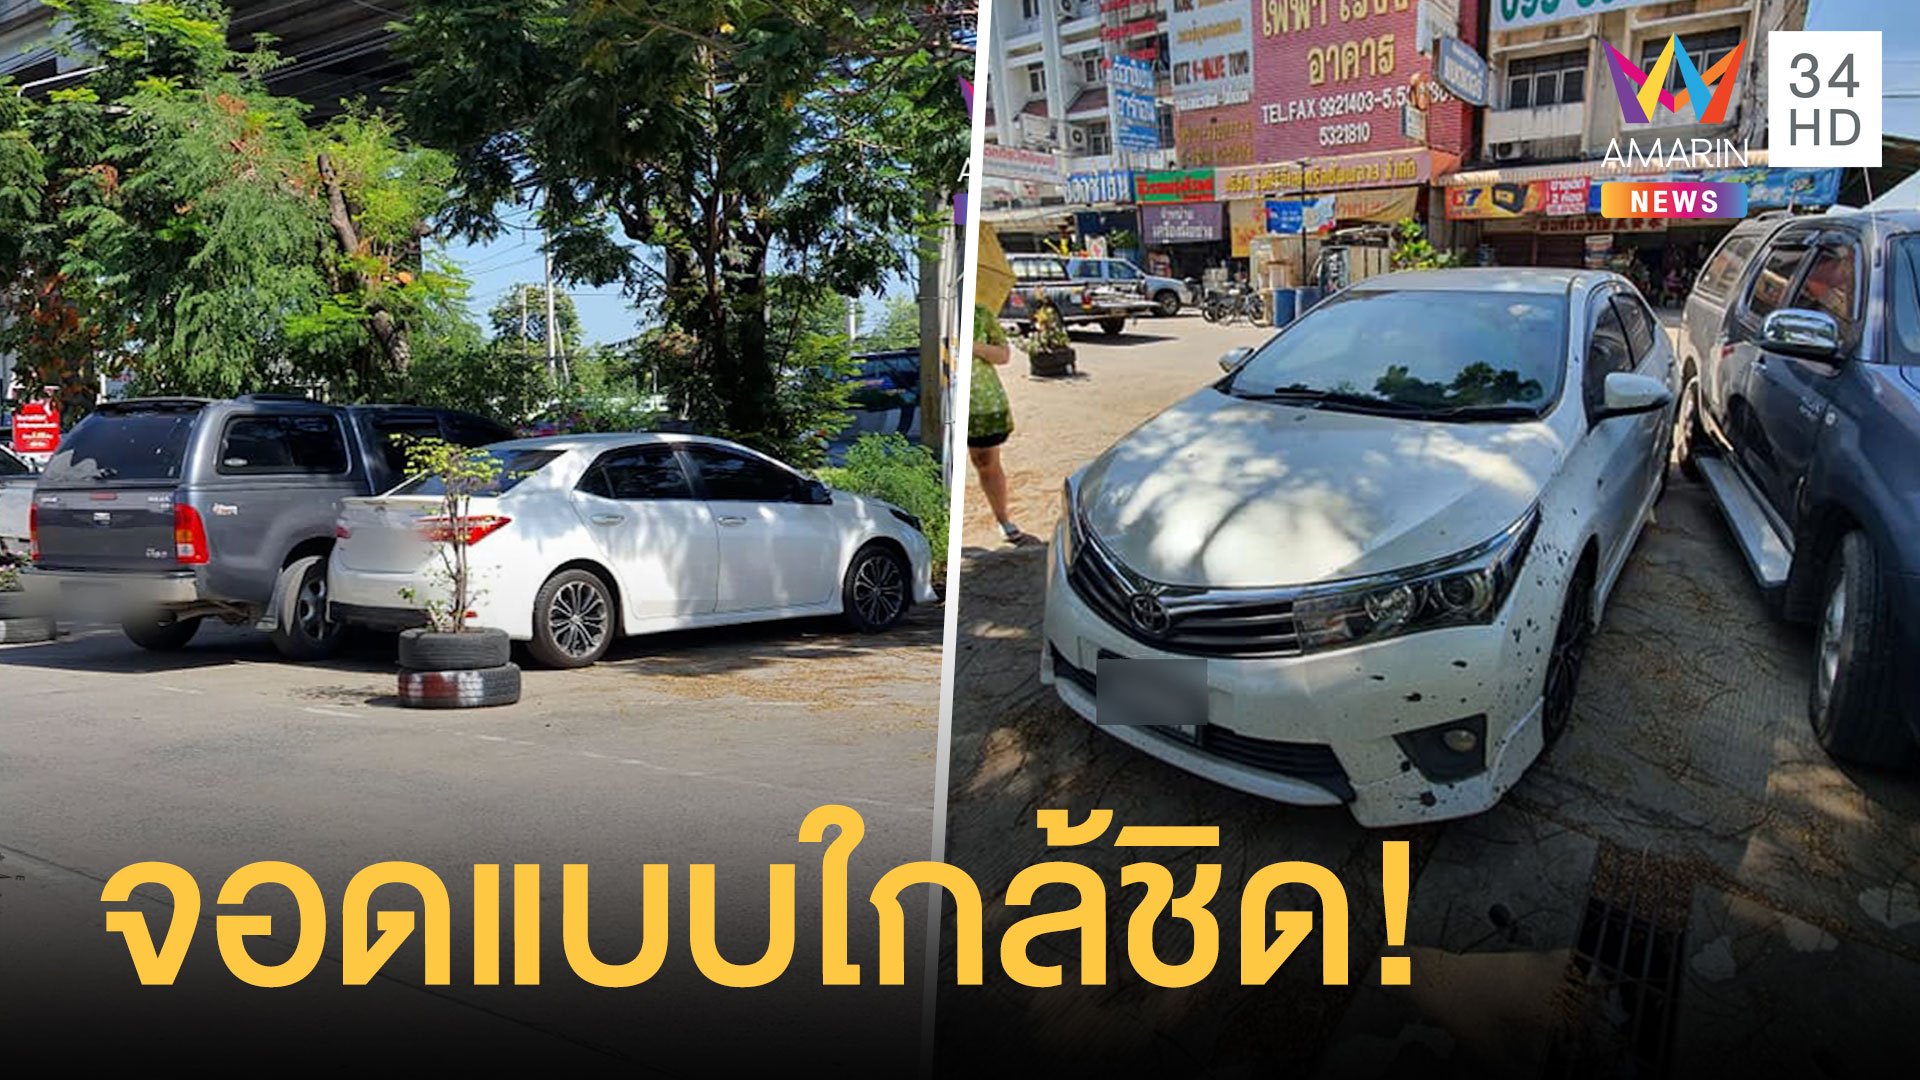 หนุ่มจอดรถซื้อของ กลับมาถูกกระบะจอดเบียดจนออกไม่ได้ | ข่าวอรุณอมรินทร์ | 29 พ.ย. 63 | AMARIN TVHD34